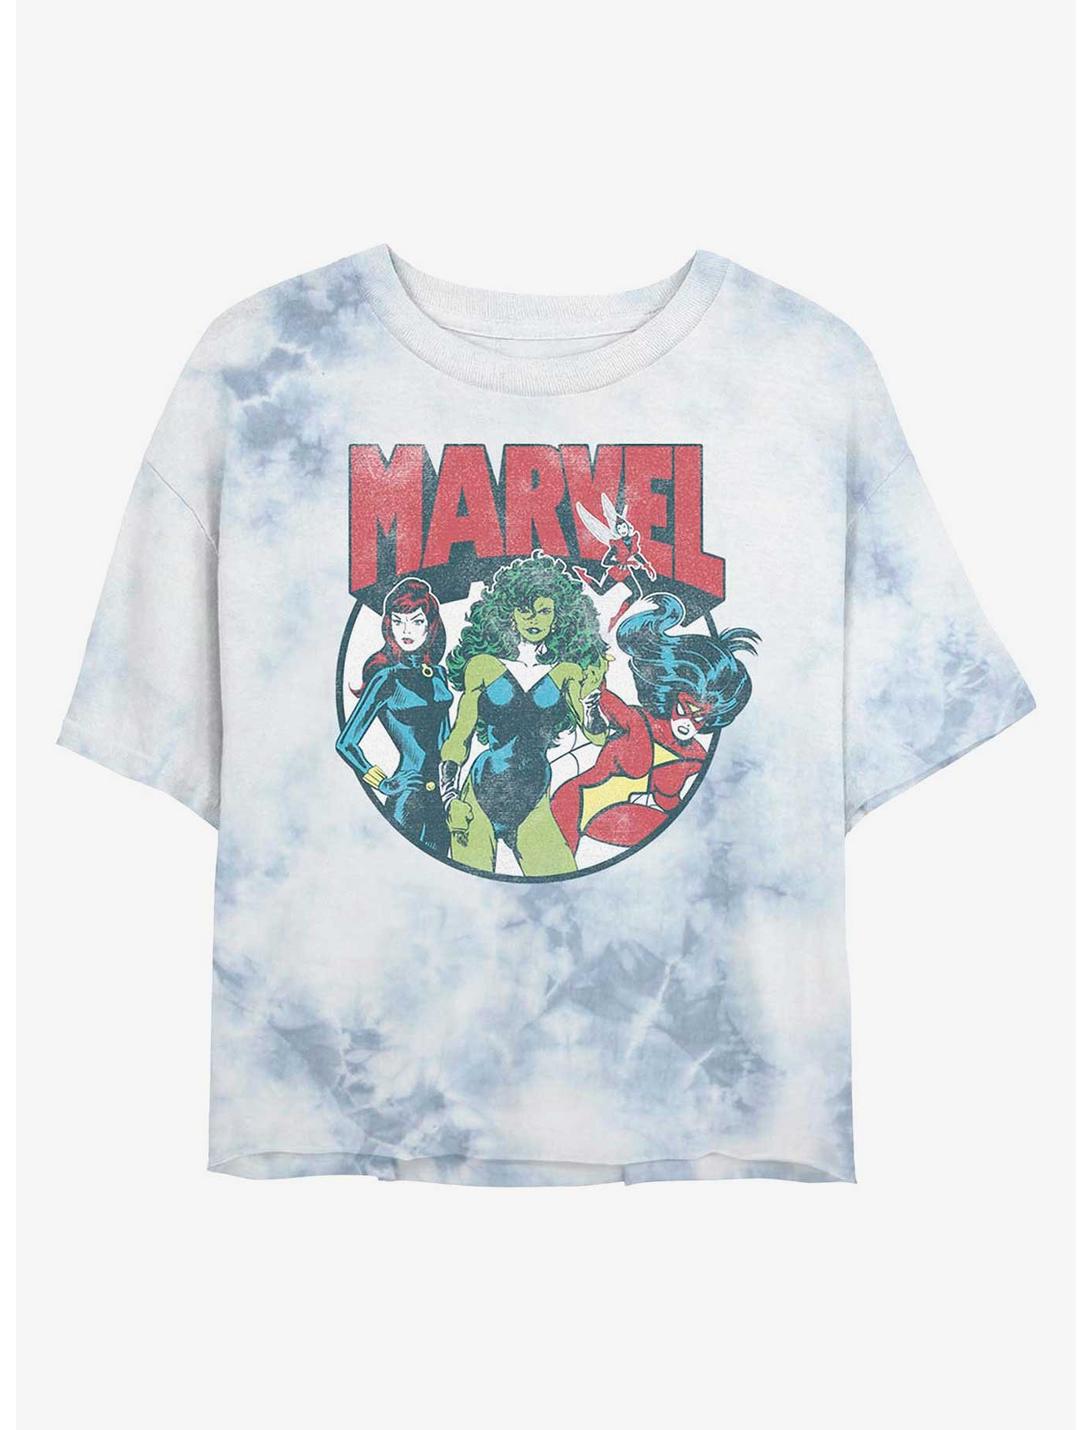 Marvel Ladies of Marvel Tie-Dye Girls Crop T-Shirt, WHITEBLUE, hi-res